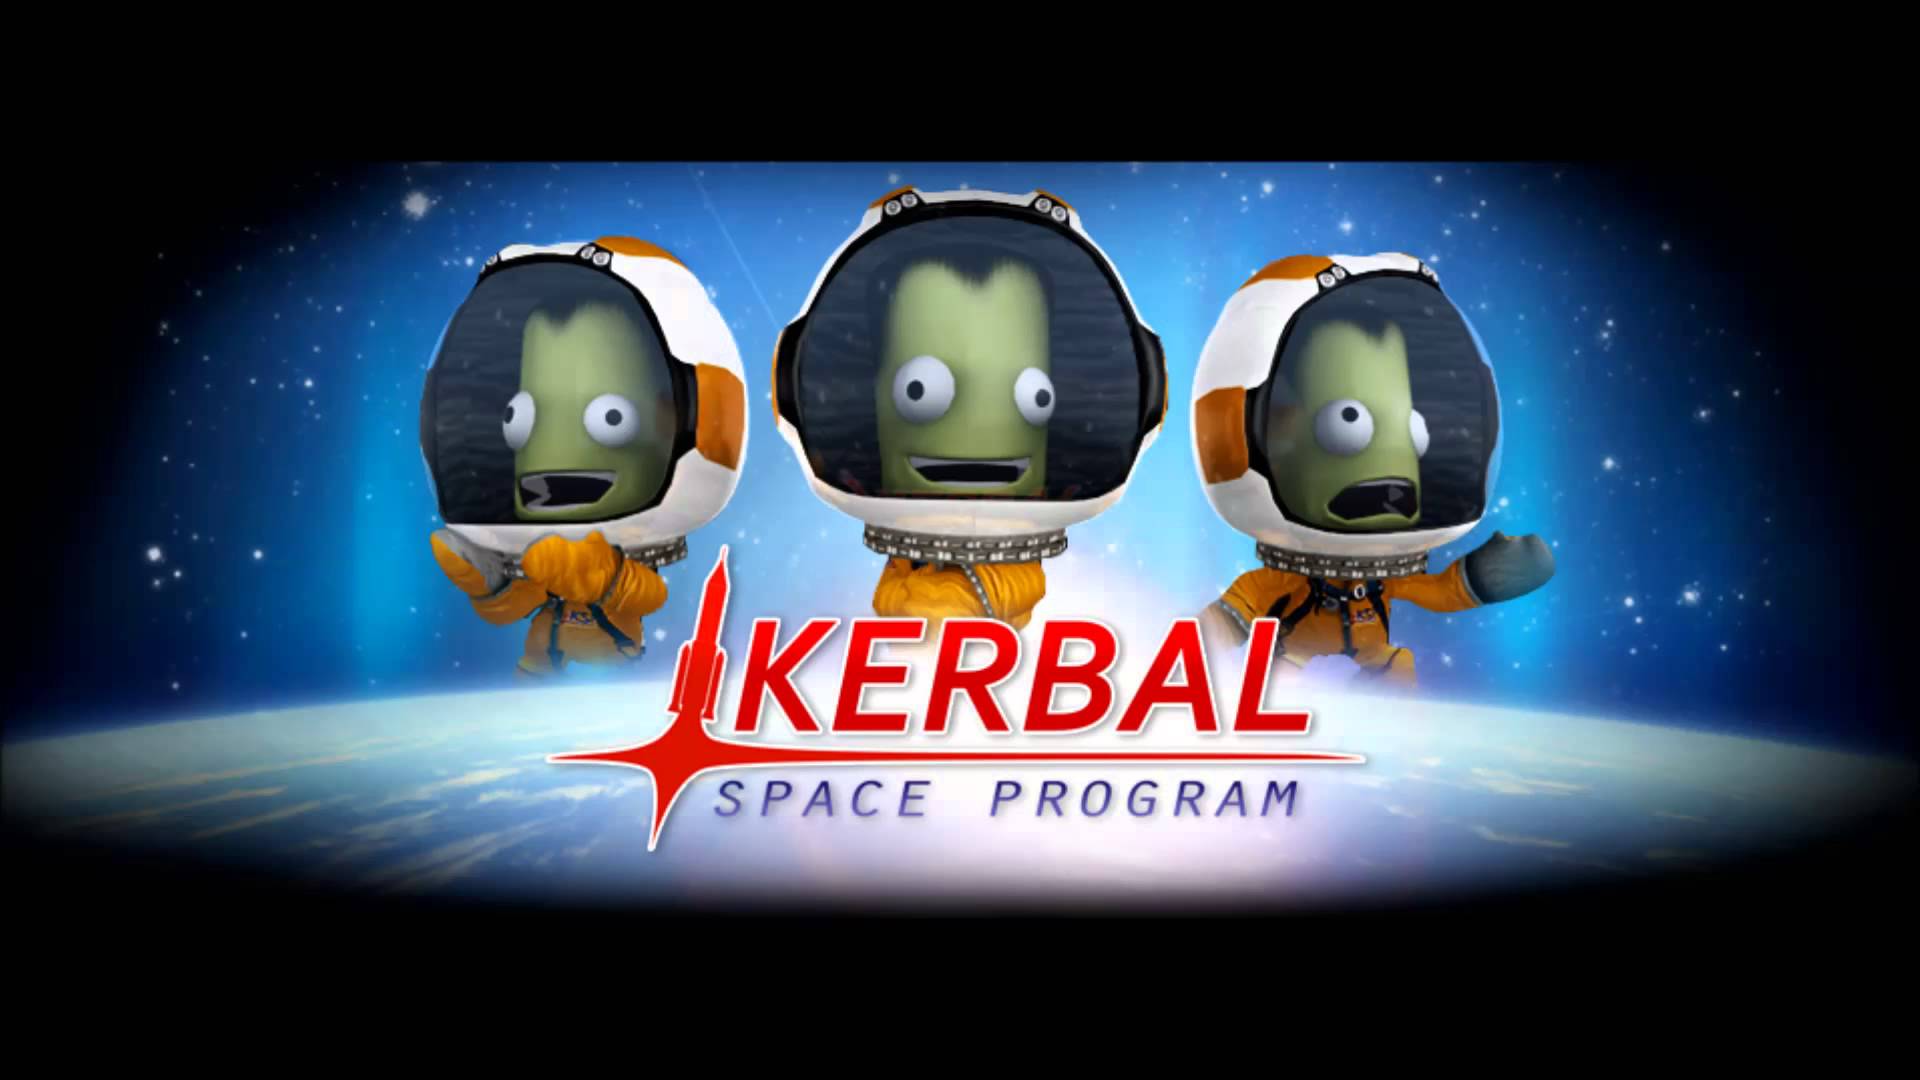 Kerbal Space Program HD wallpapers, Desktop wallpaper - most viewed